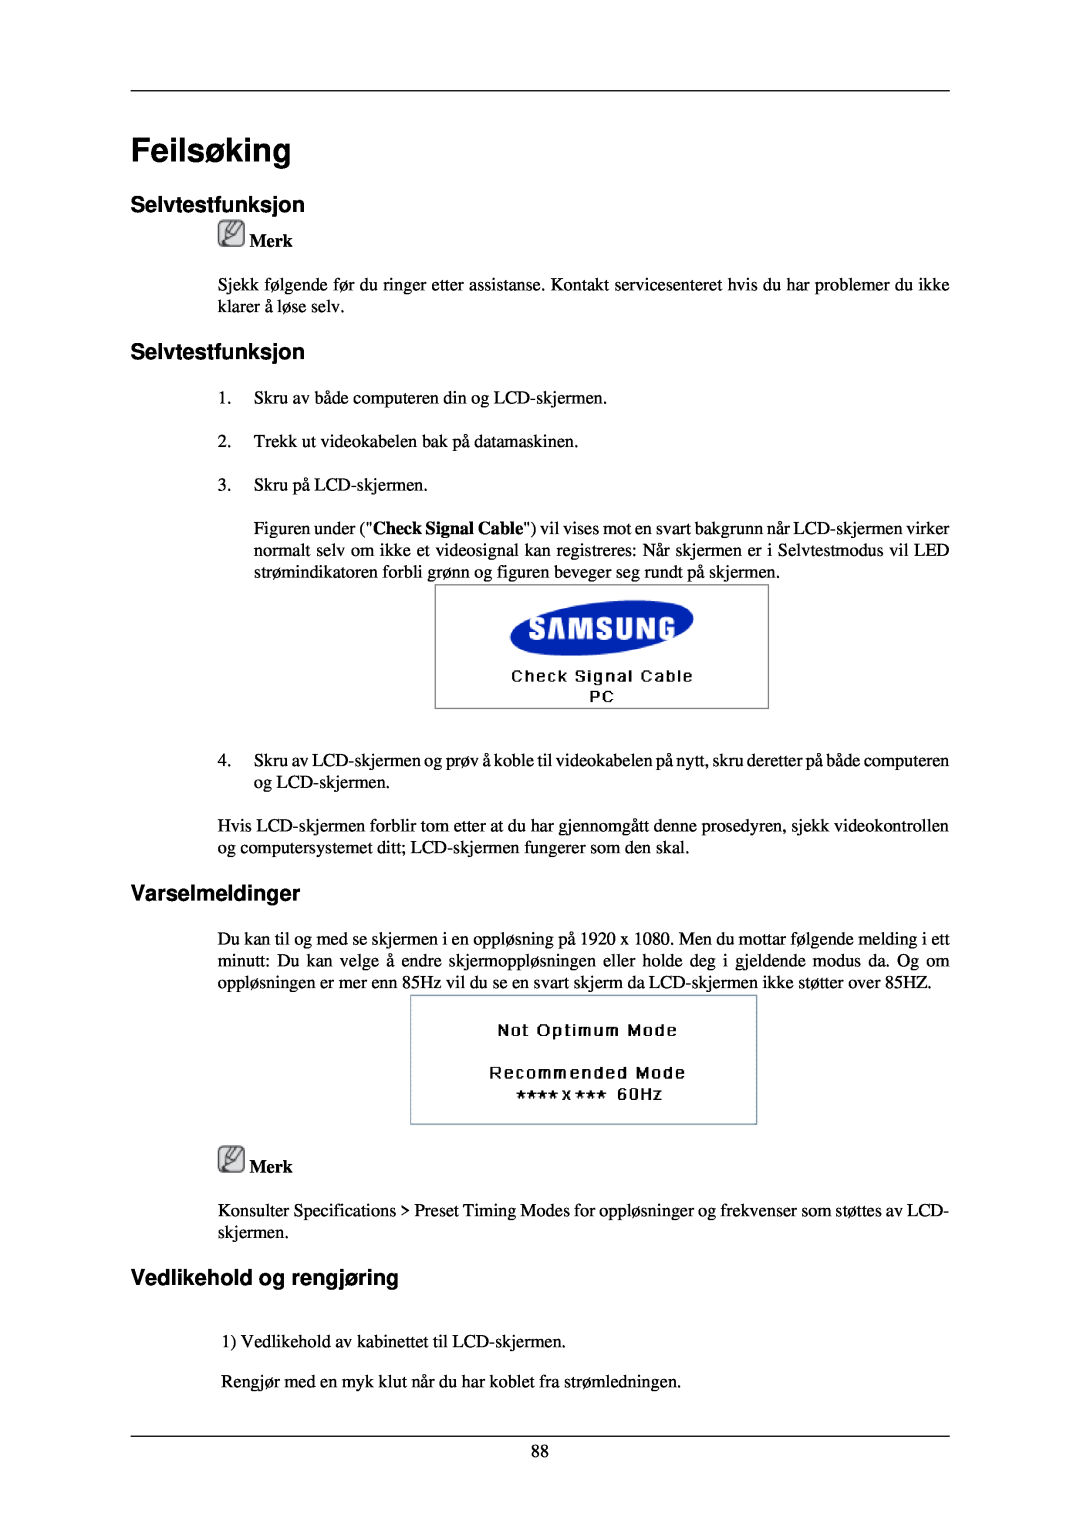 Samsung LH46TCUMBG/EN, LH40TCUMBG/EN manual Feilsøking, Selvtestfunksjon, Varselmeldinger, Vedlikehold og rengjøring, Merk 